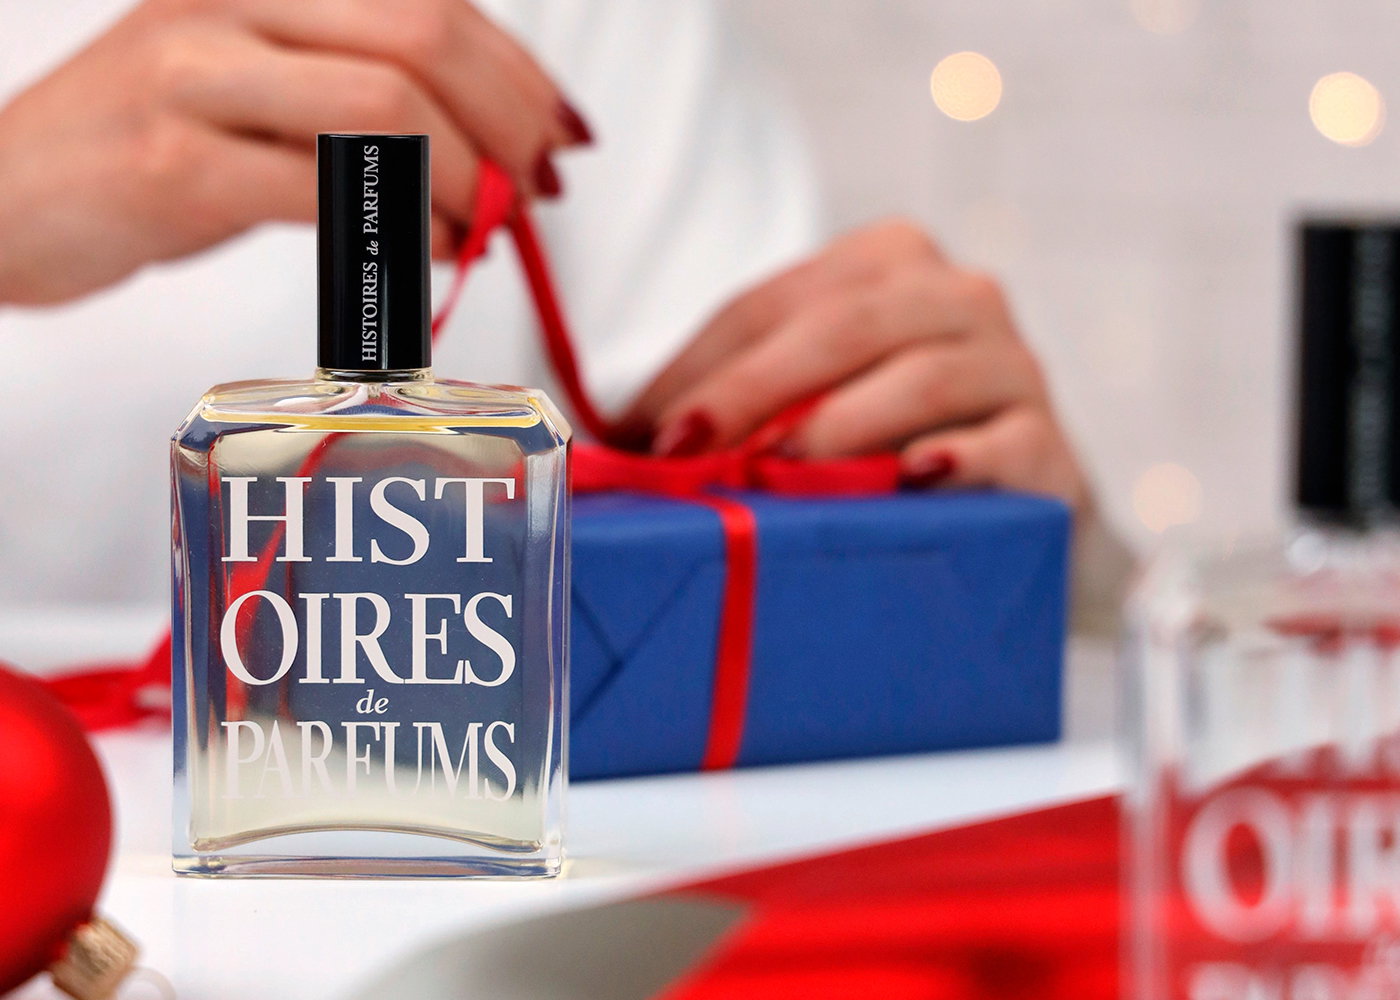 1725, Shower gel & Body lotion - Histoires de Parfums